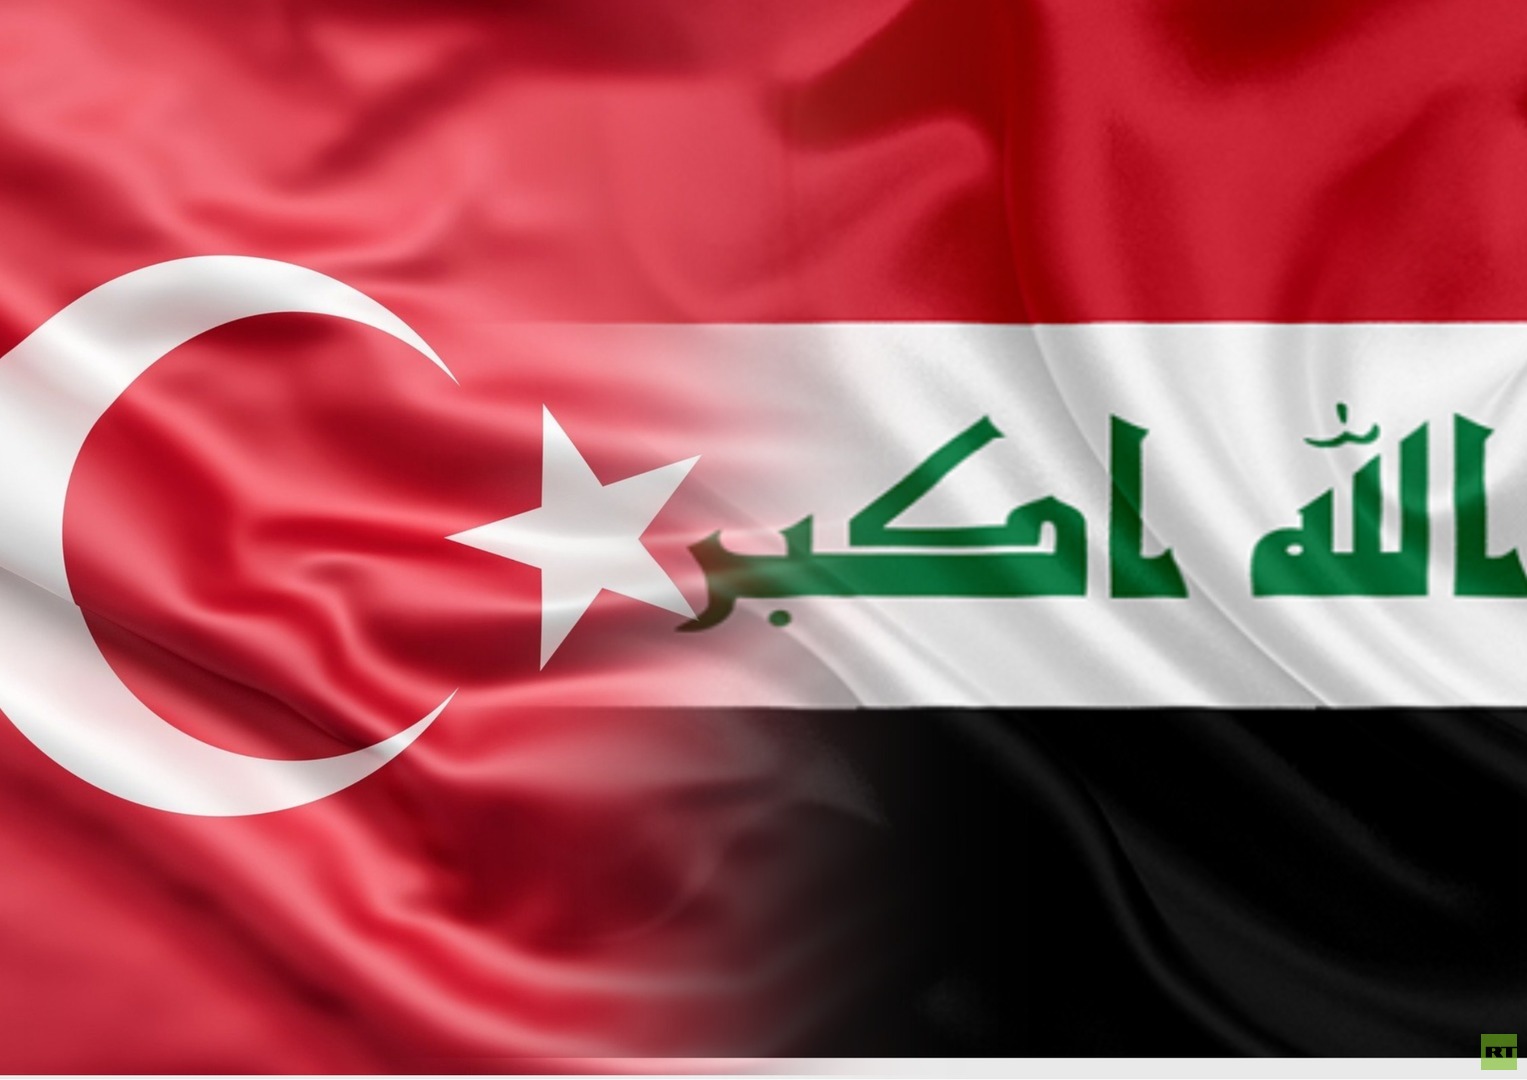 العراق وتركيا يتفقان على فتح منفذ حدودي جديد بين البلدين